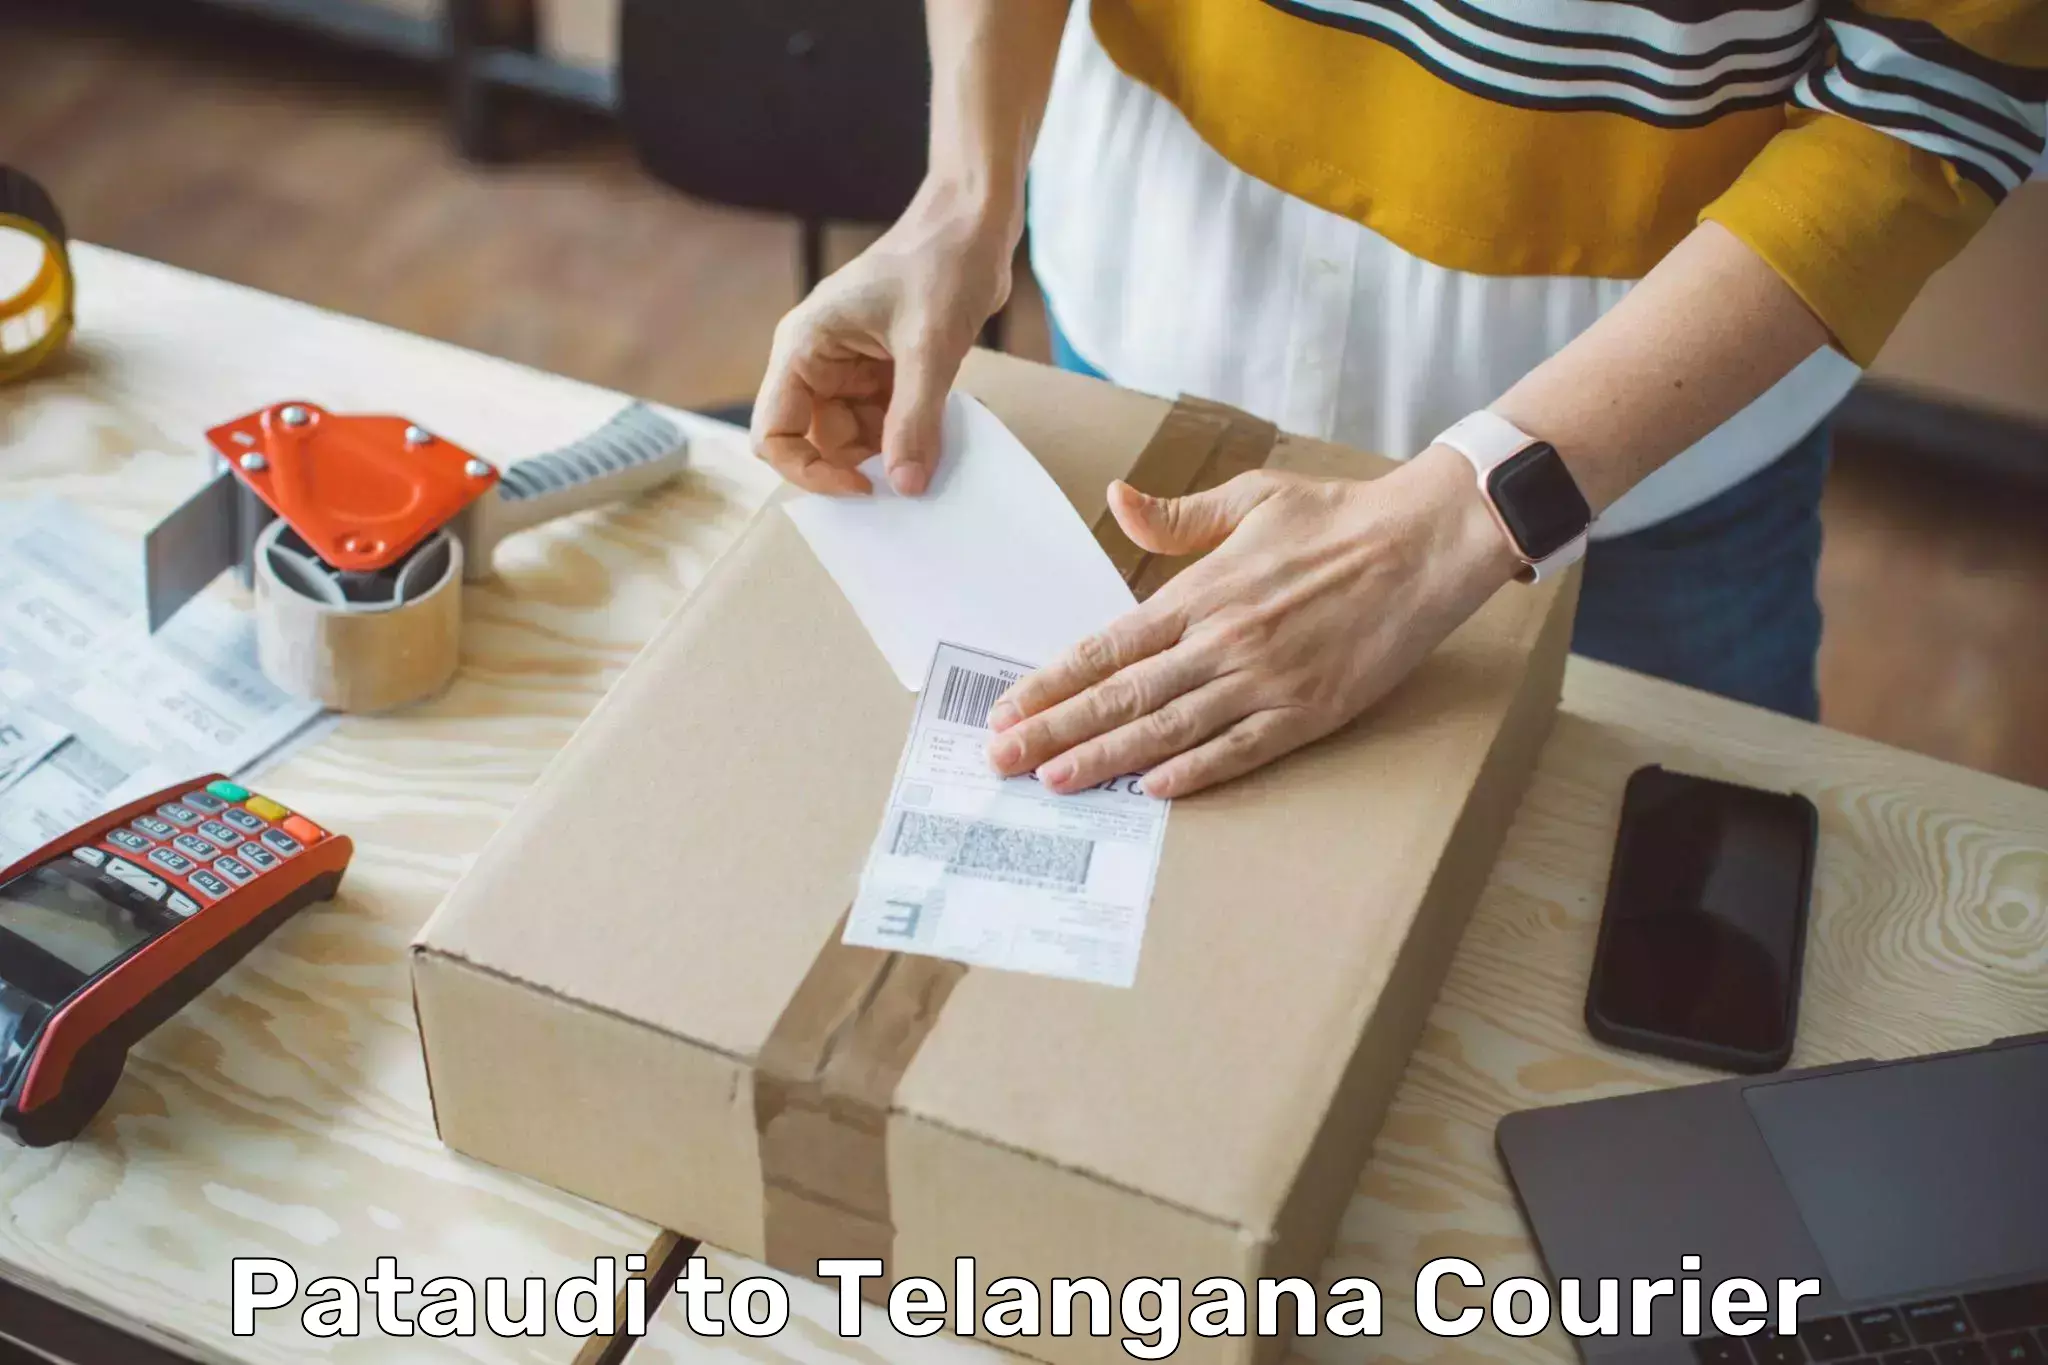 Premium courier solutions Pataudi to Telangana